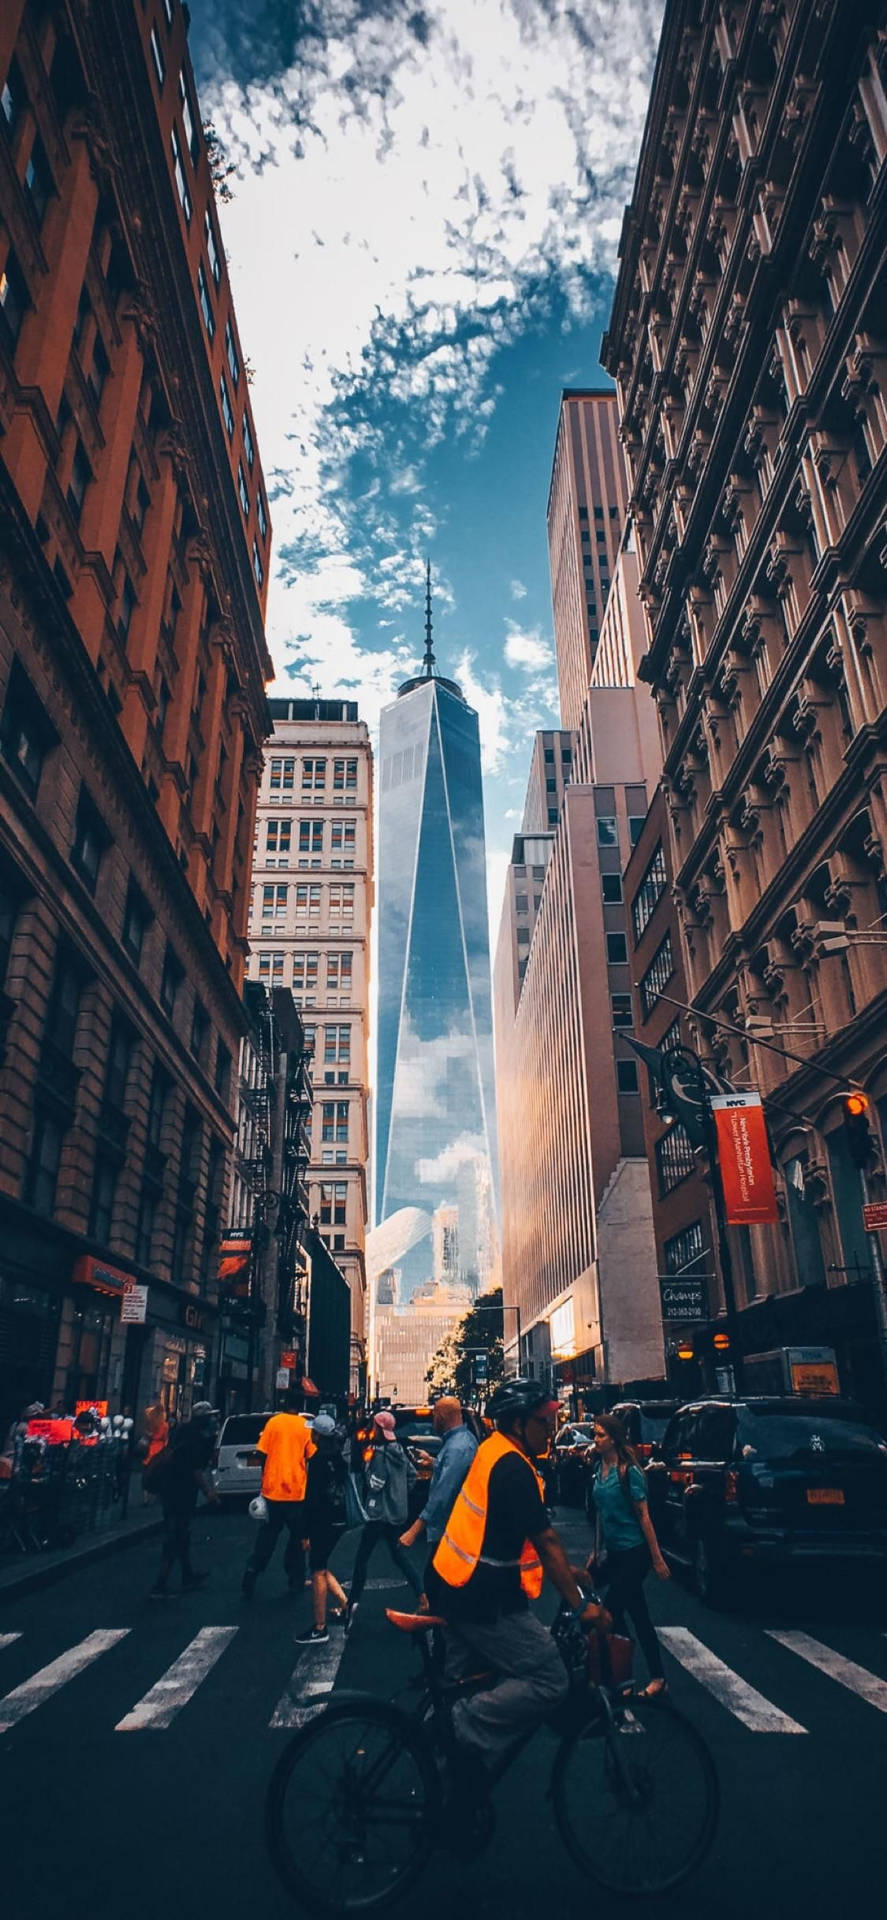 Novopapel De Parede Para Iphone X De Pedestres Em Nova York. Papel de Parede